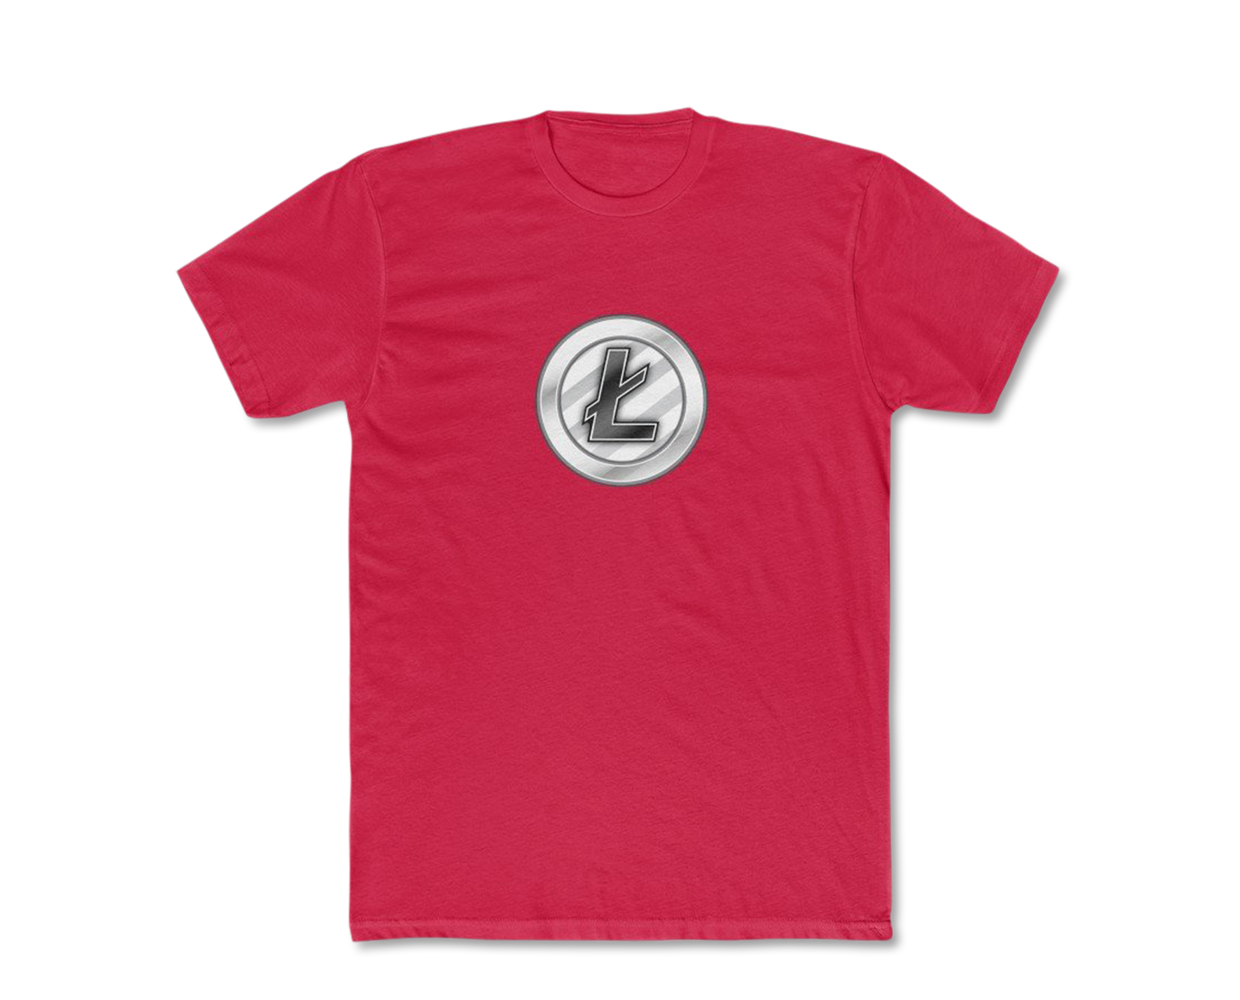 Litecoin T-Shirt